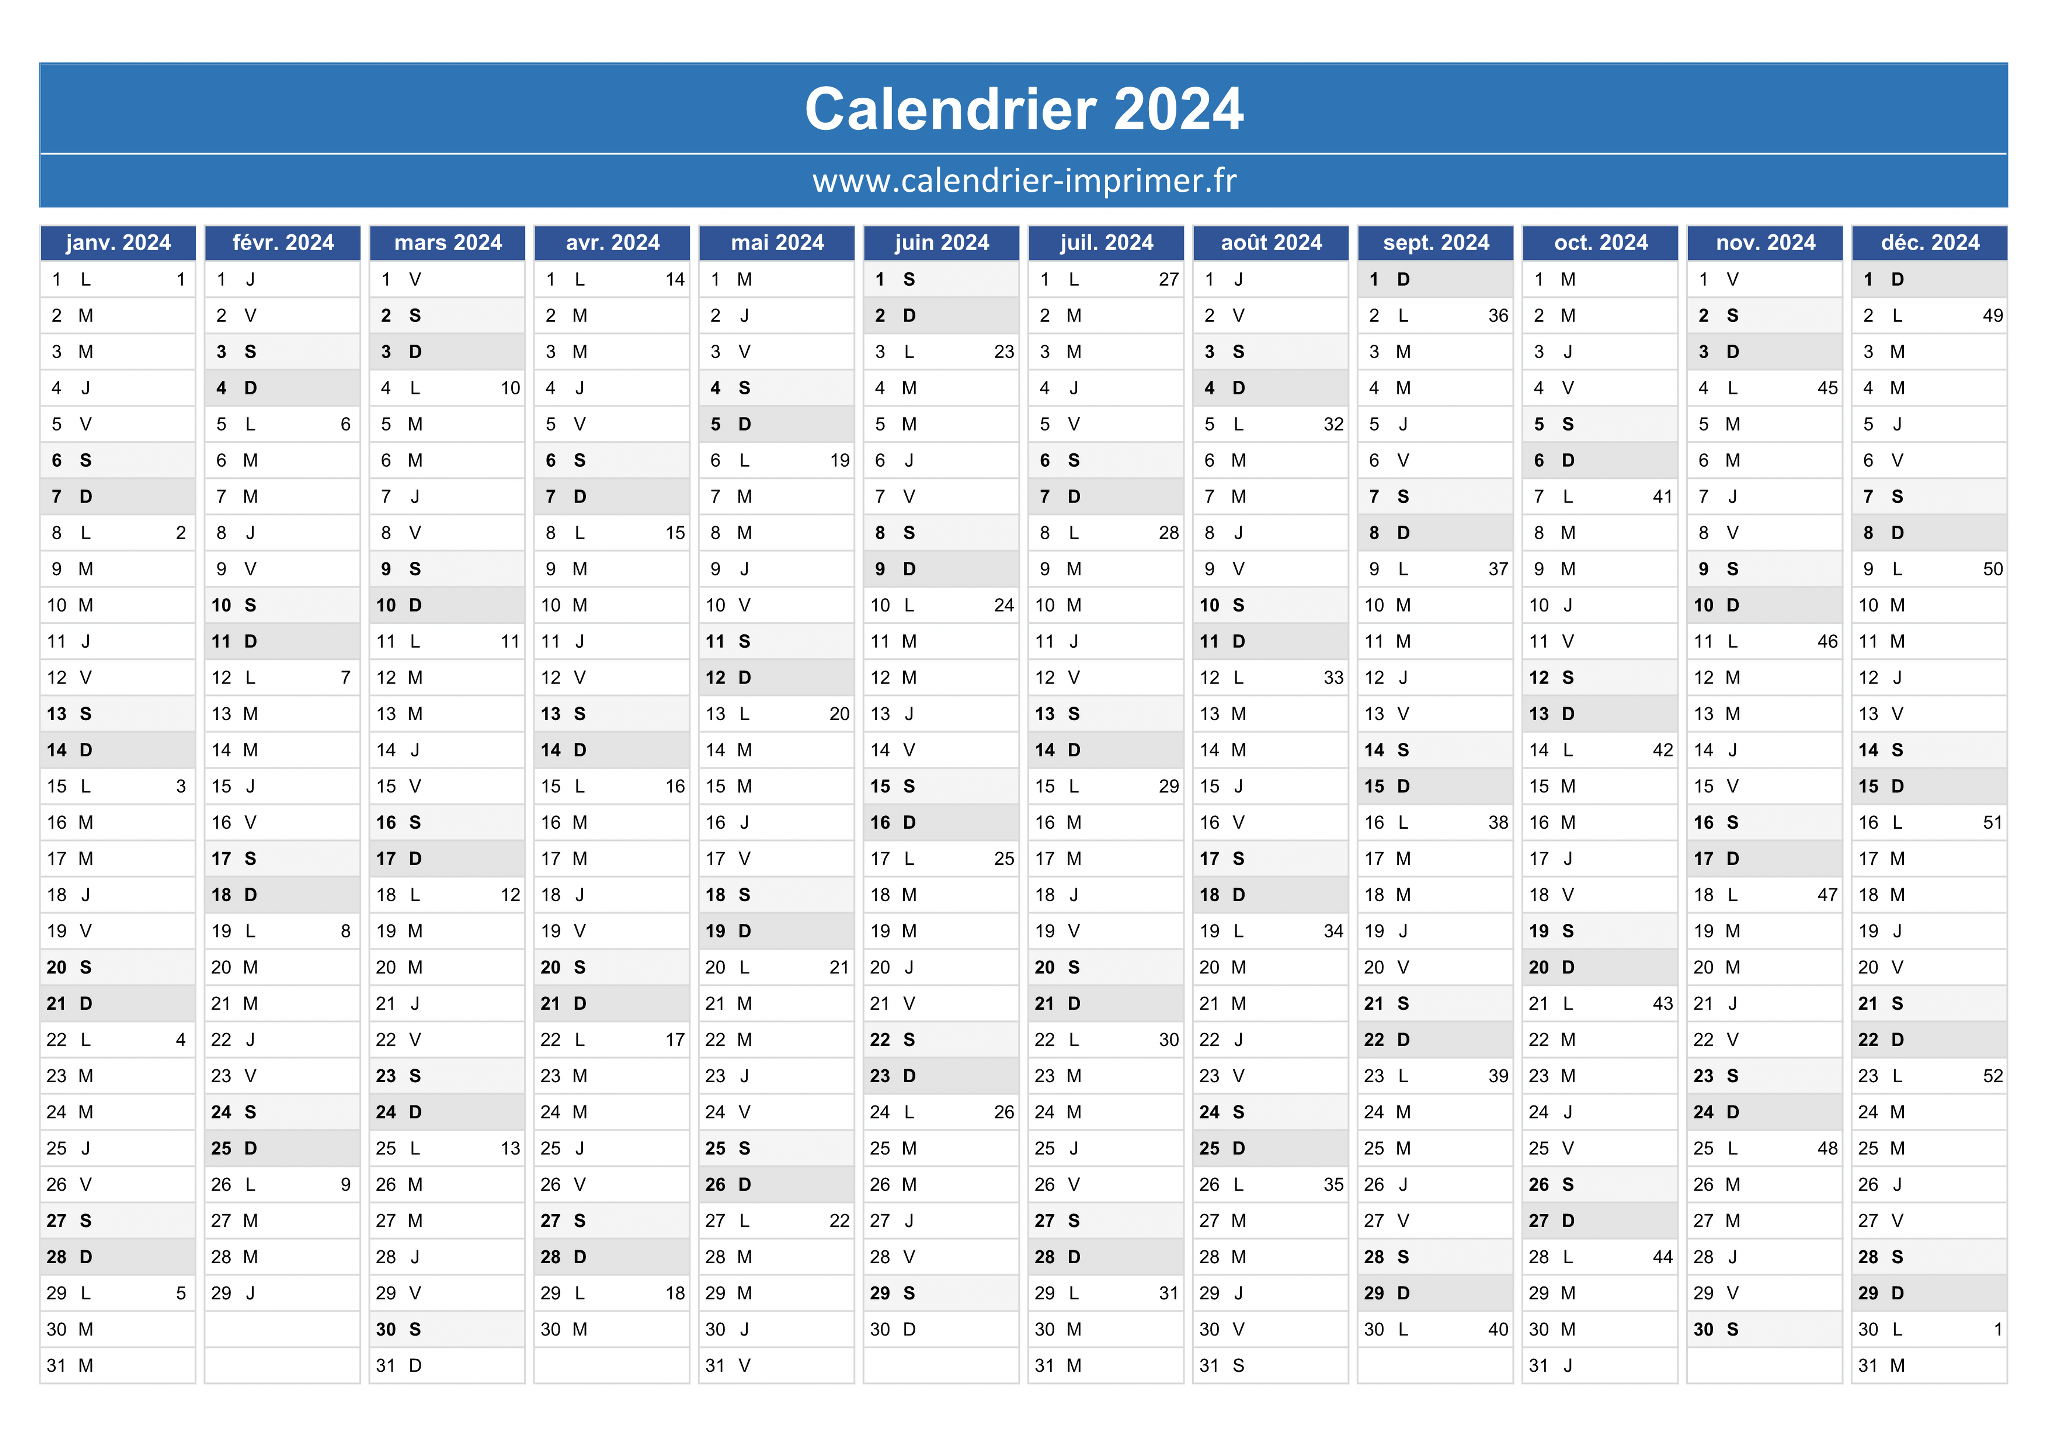 Semaine Paire - Semaine impaire : calendrier 2023-2024